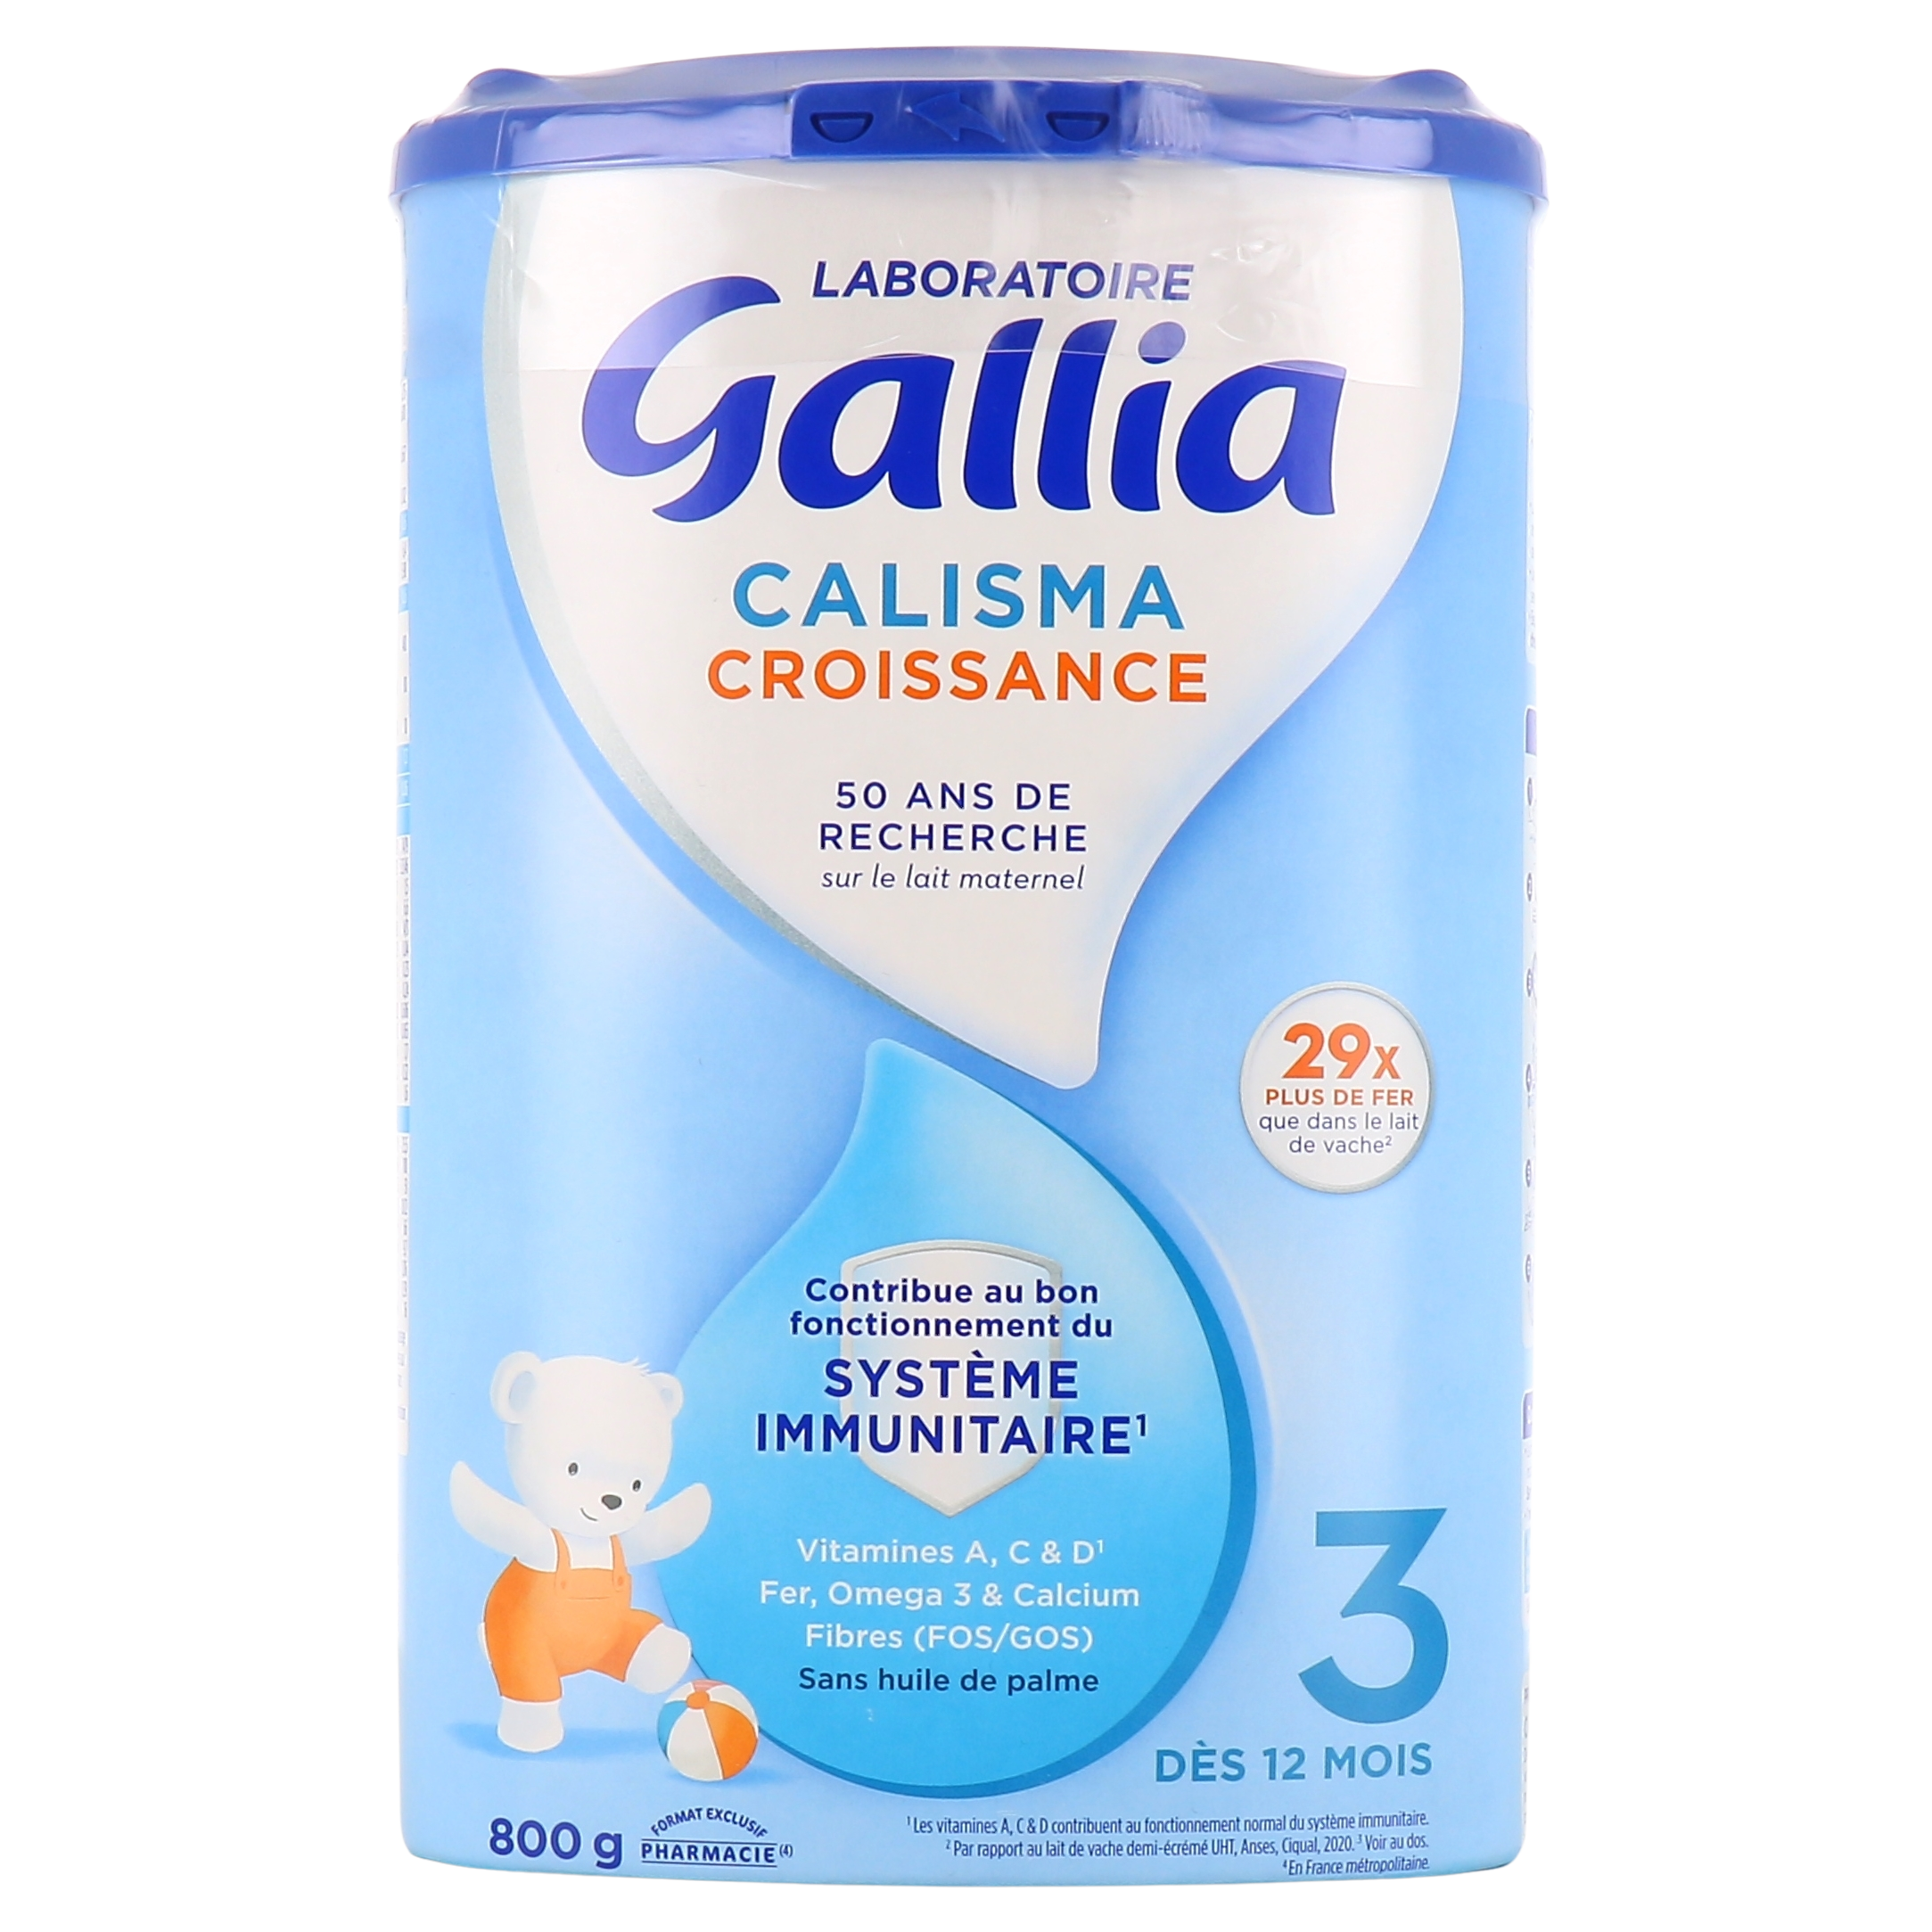 Gallia calisma relais 1 - 400 g